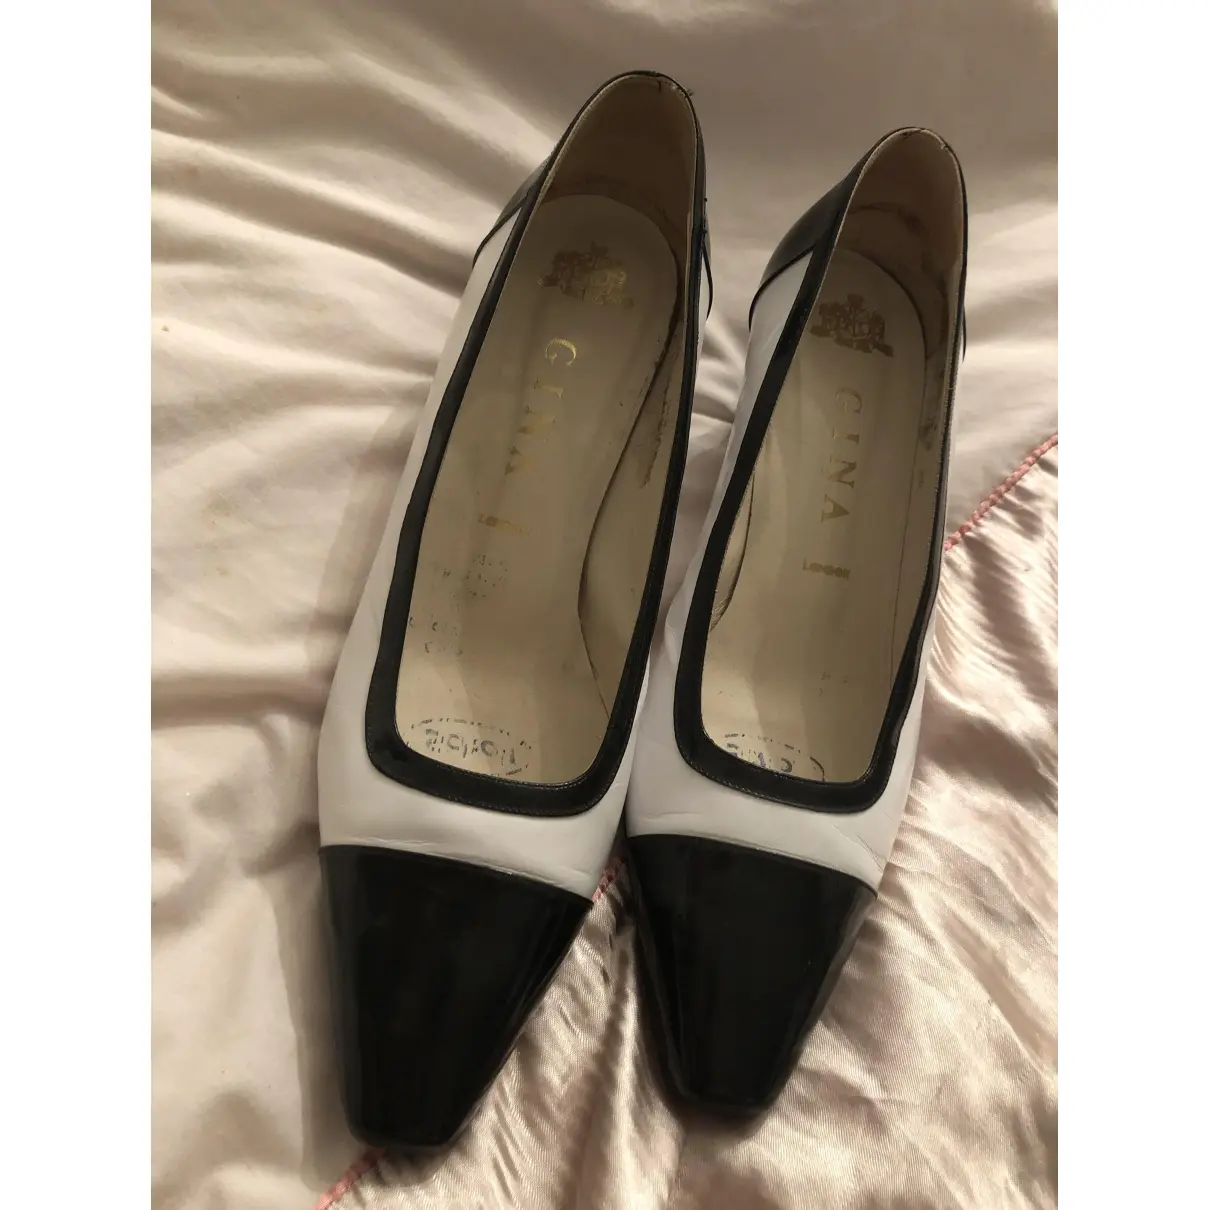 Gina Leather heels for sale - Vintage